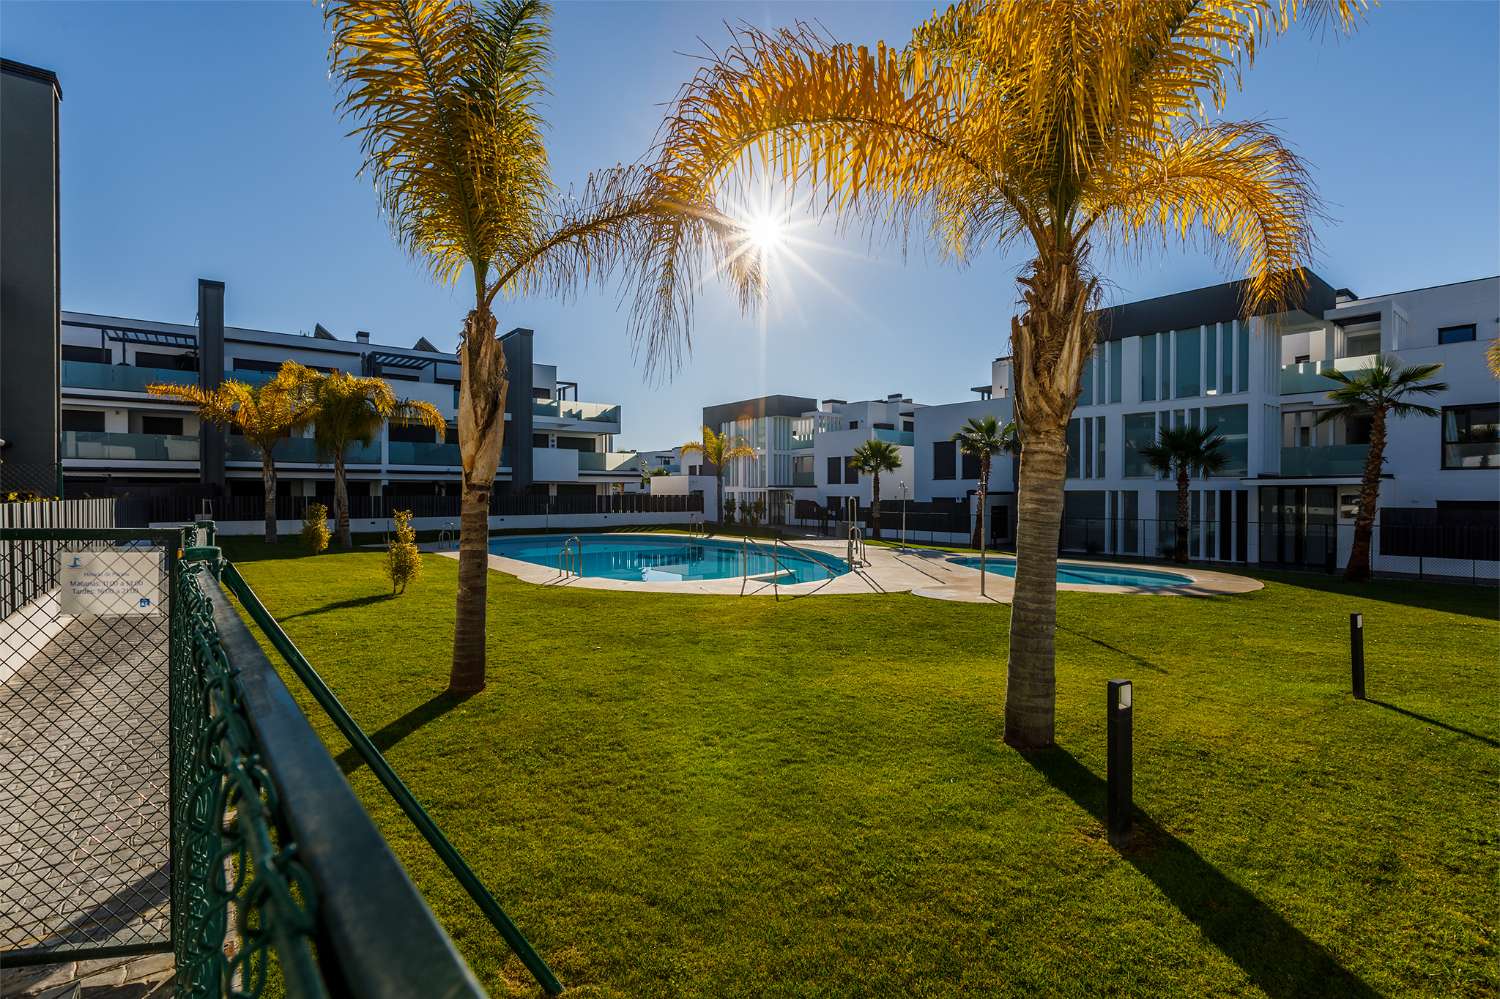 Apartment mit 3 Schlafzimmern, Garten, Grill und Gemeinschaftspool neben dem Strand von Puerto de la Caleta